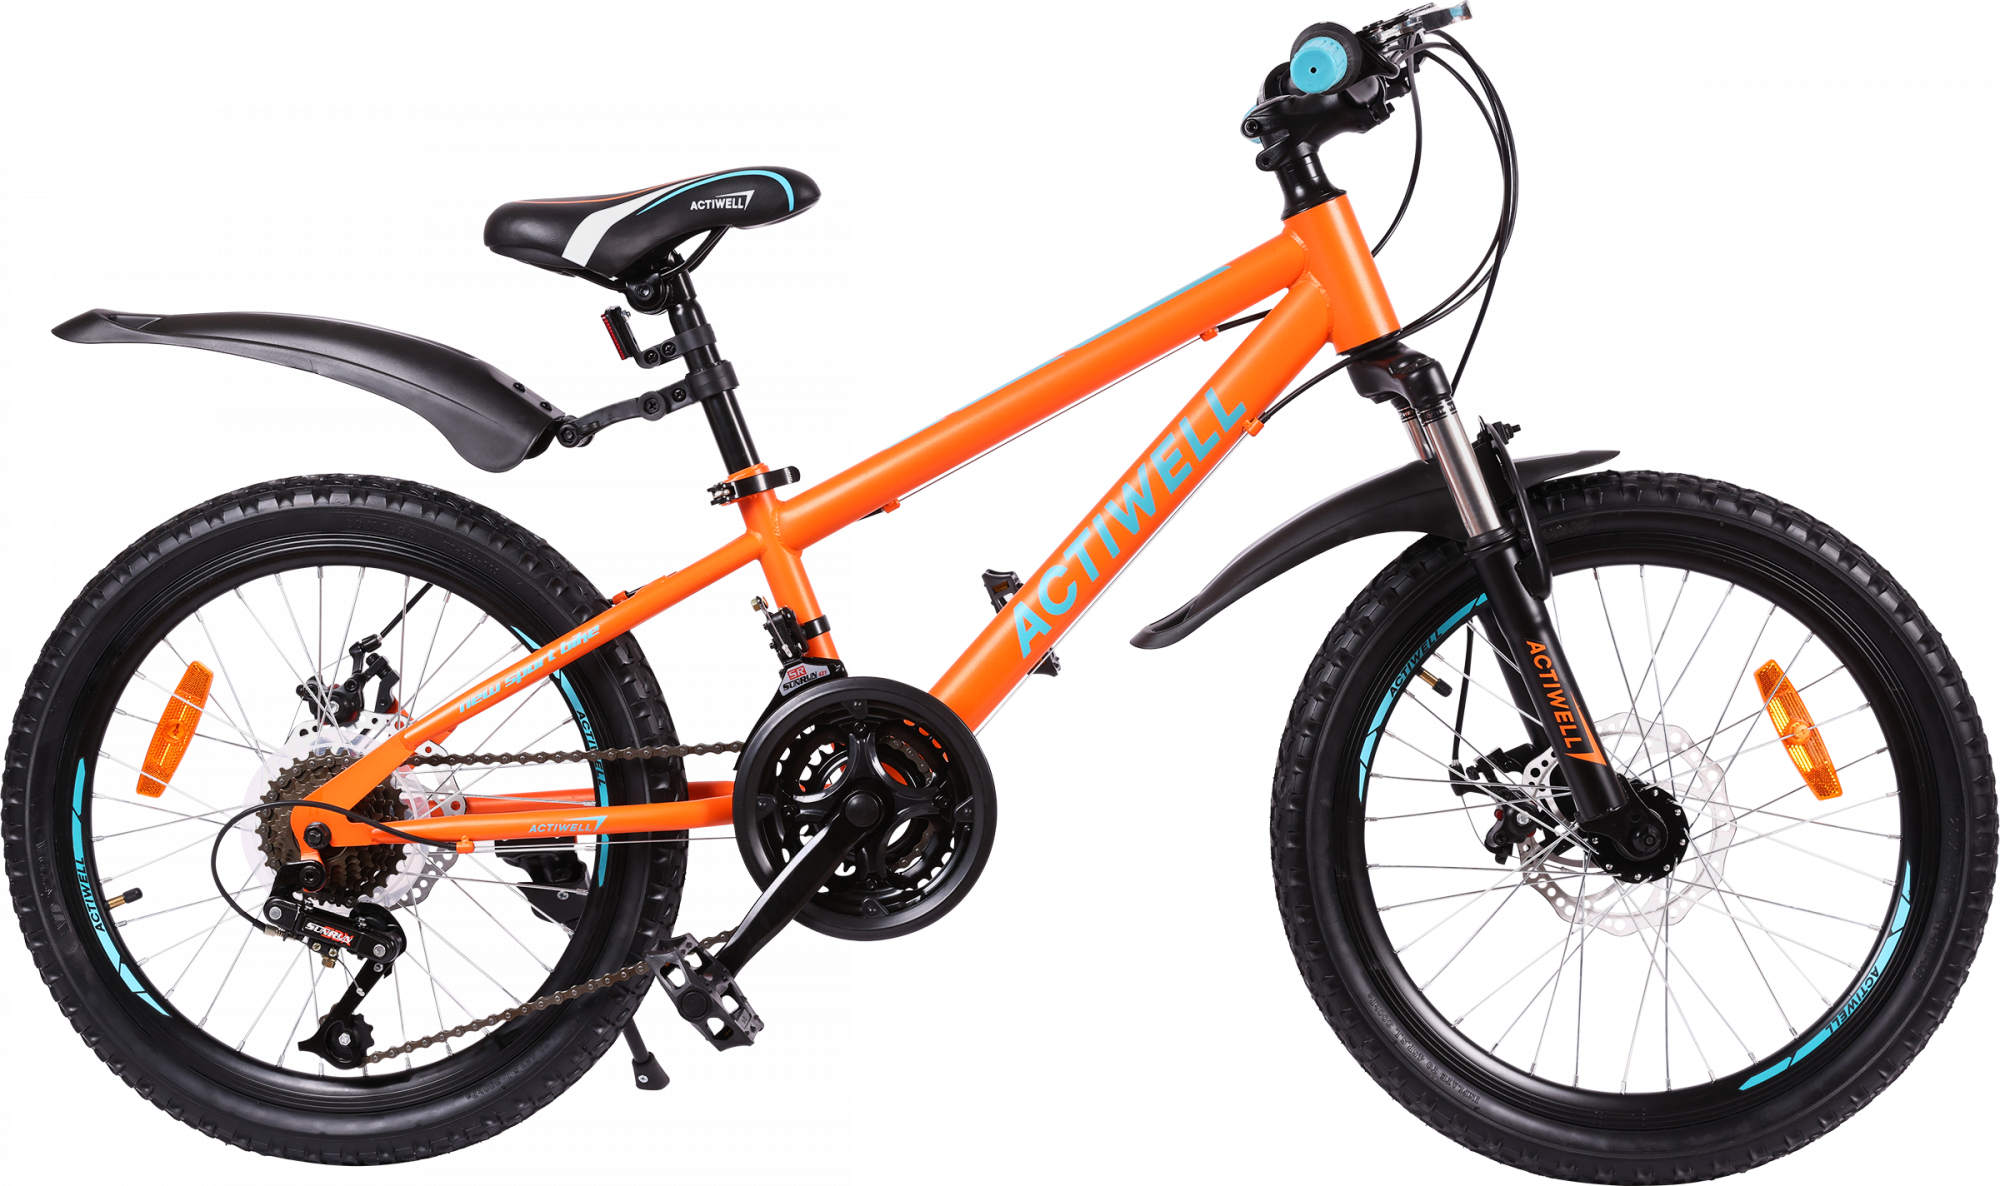 Велосипед городской Actiwell Joy 20" оранжево-бирюзовый - купить в Москве, цены на Мегамаркет | 100062589887